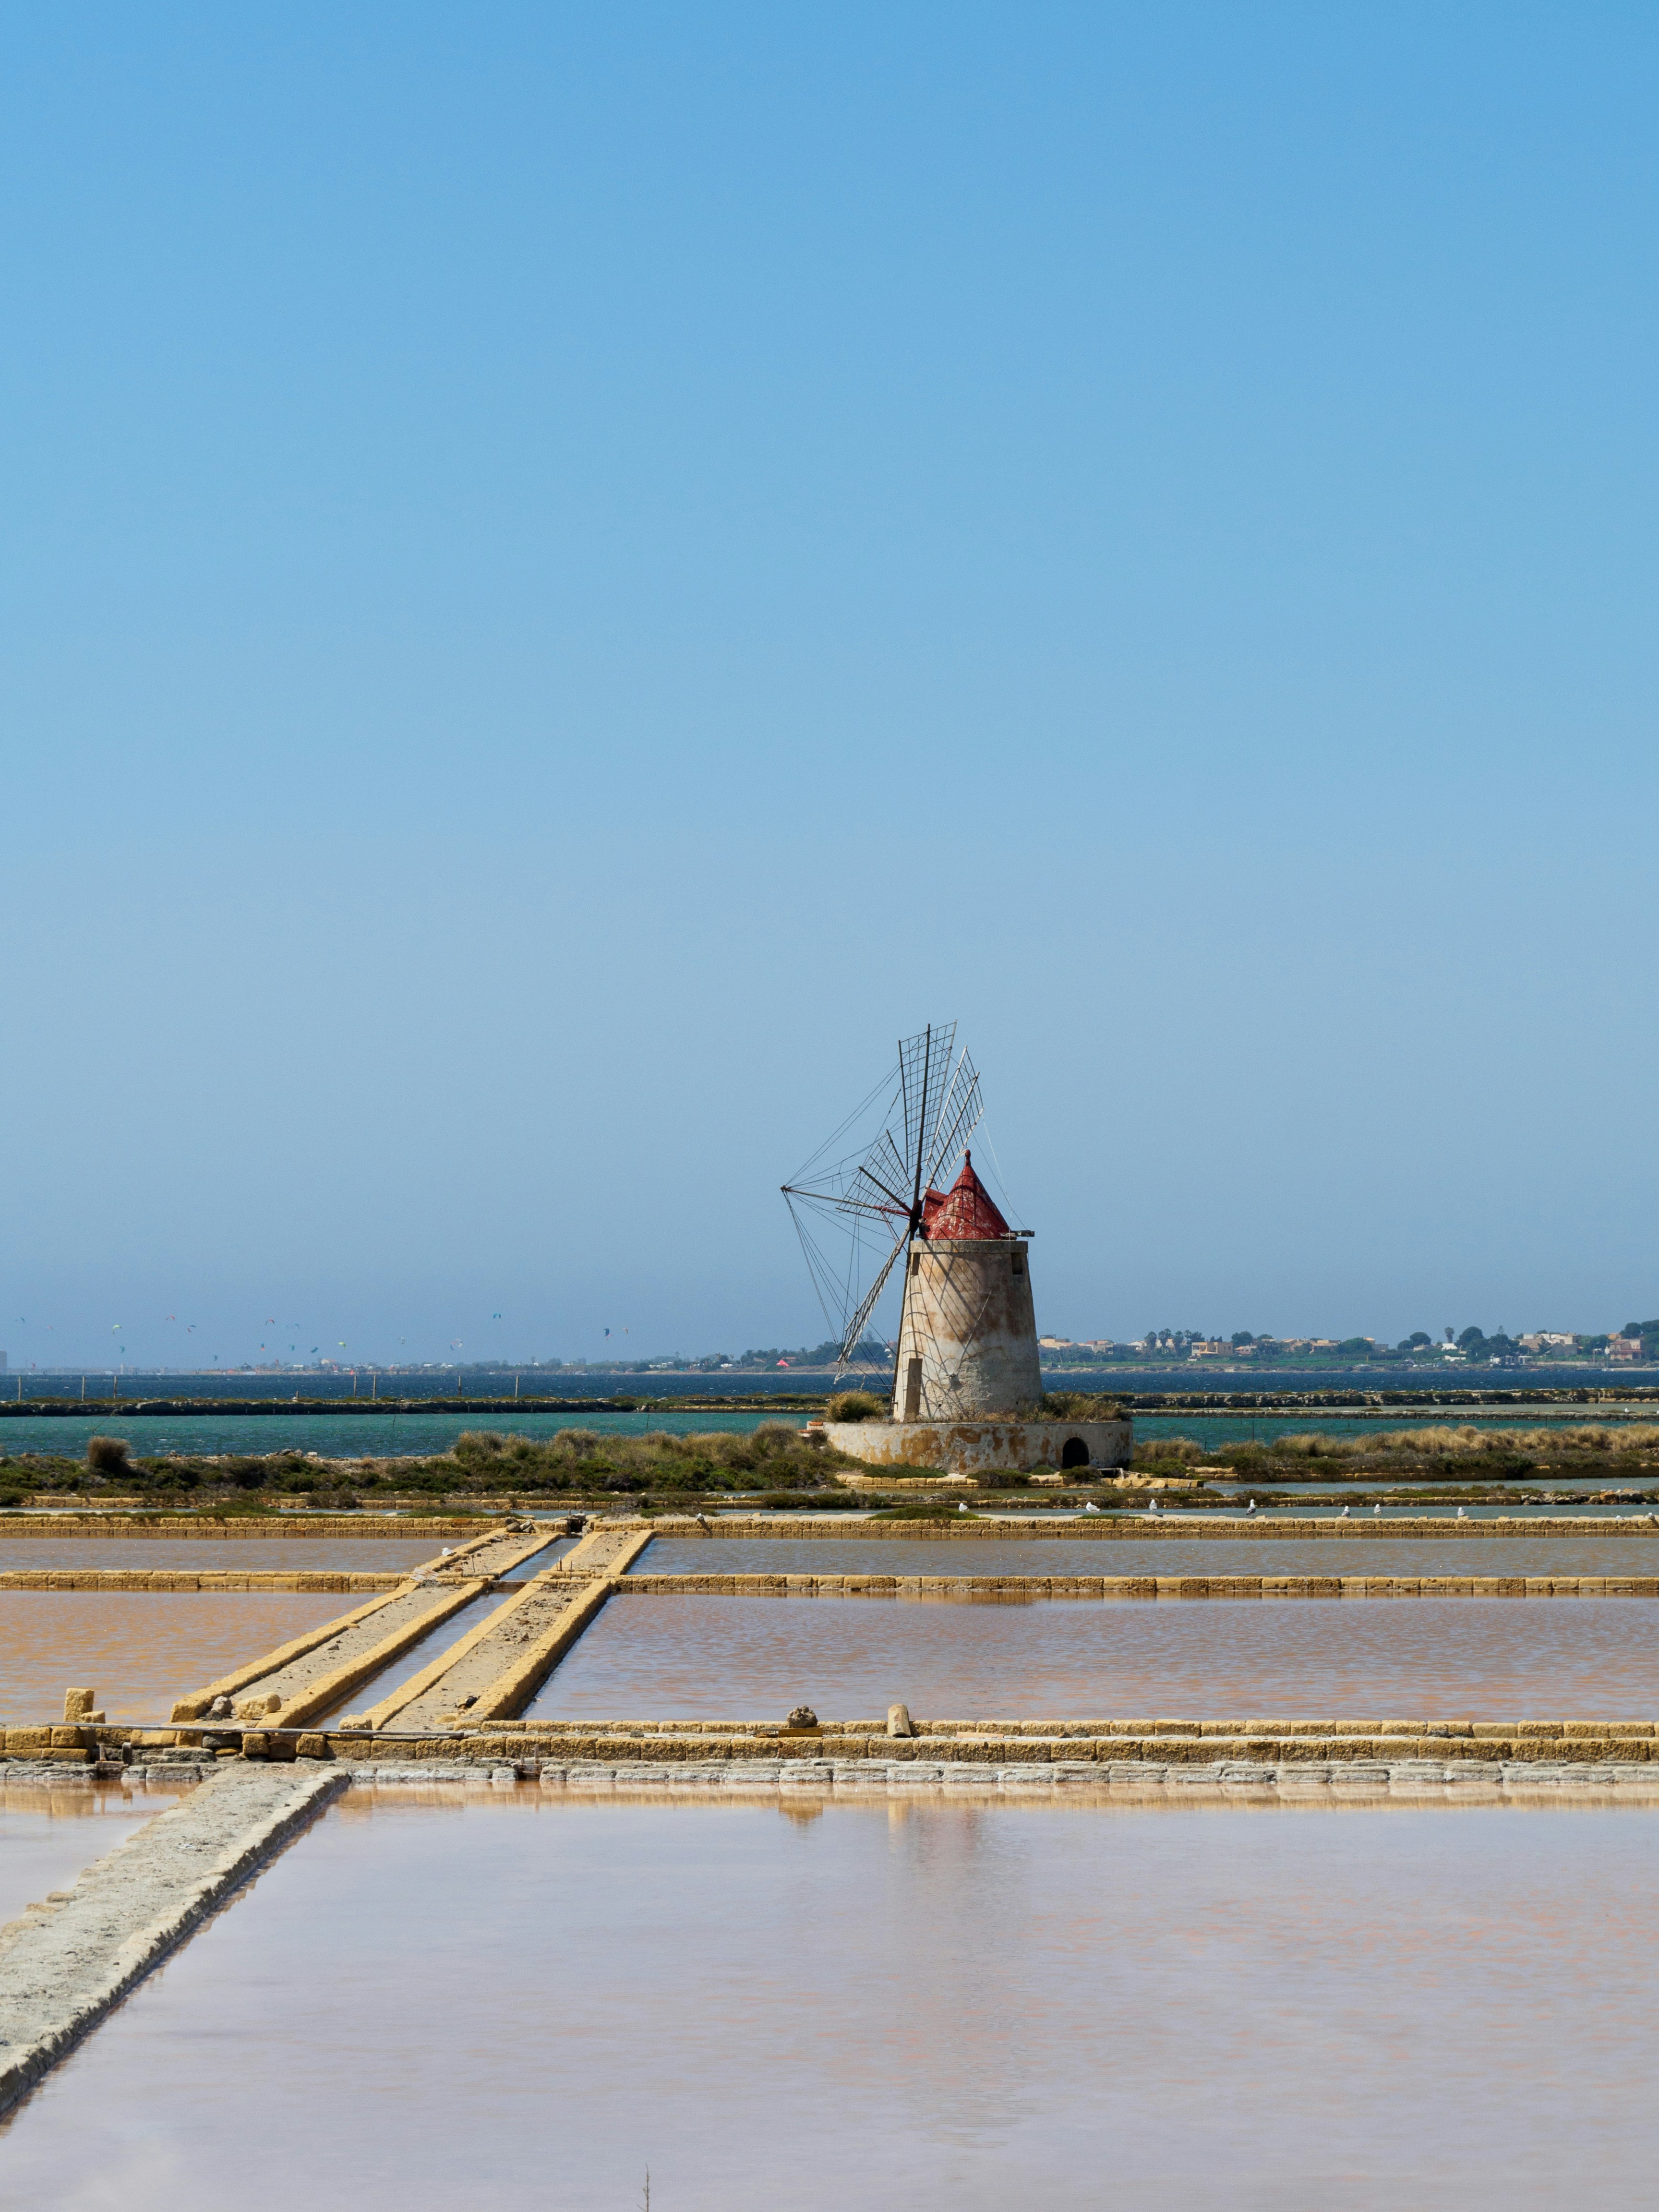 windmill near body of water